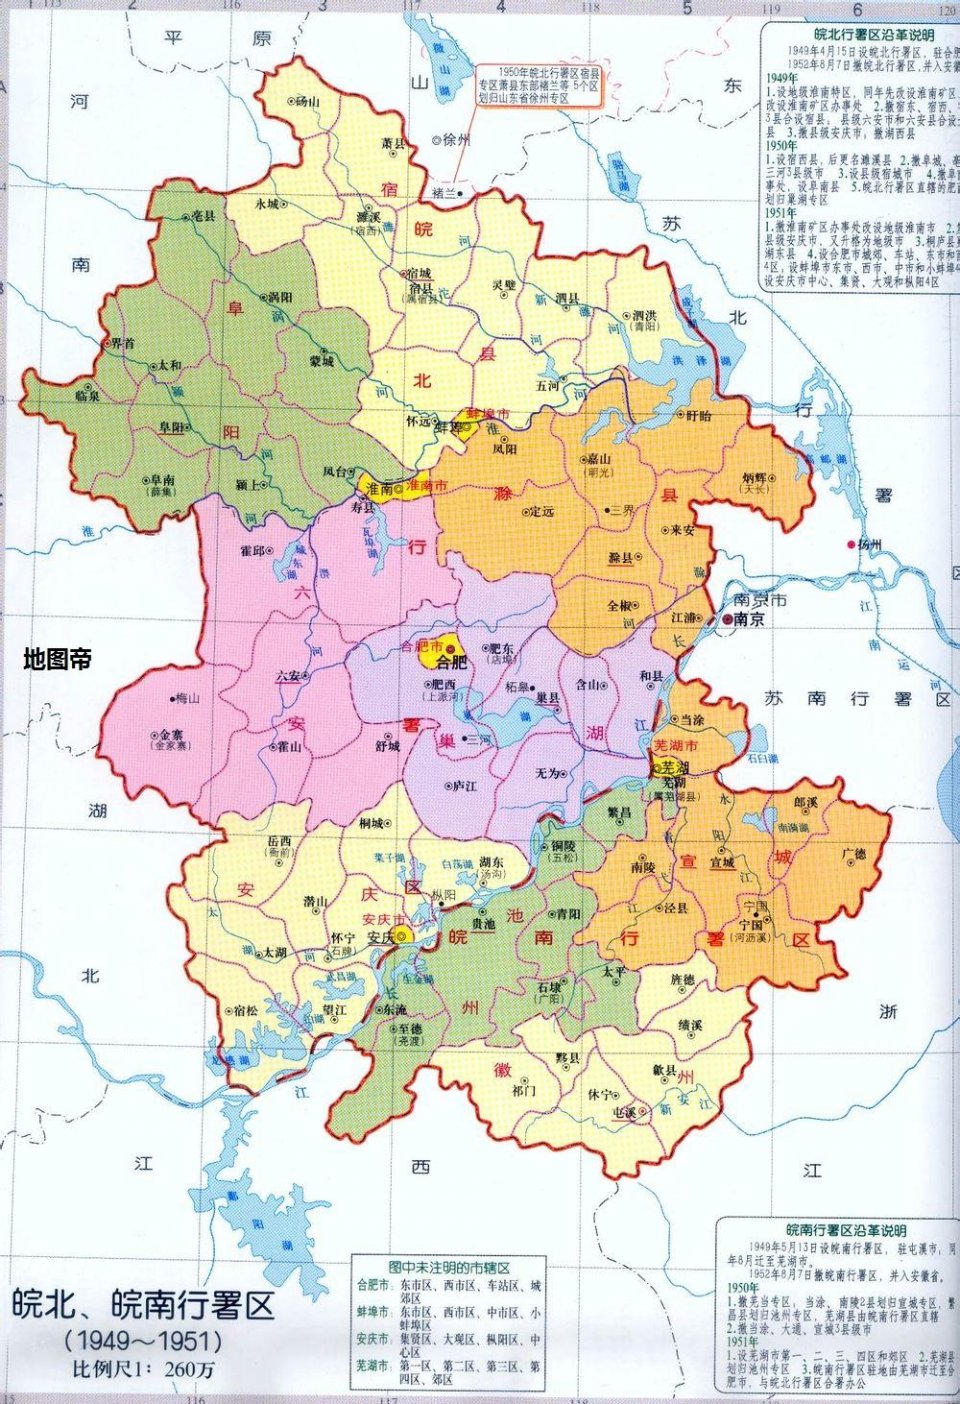 在地图上,永城市被安徽省三面包围,为何却属於河南